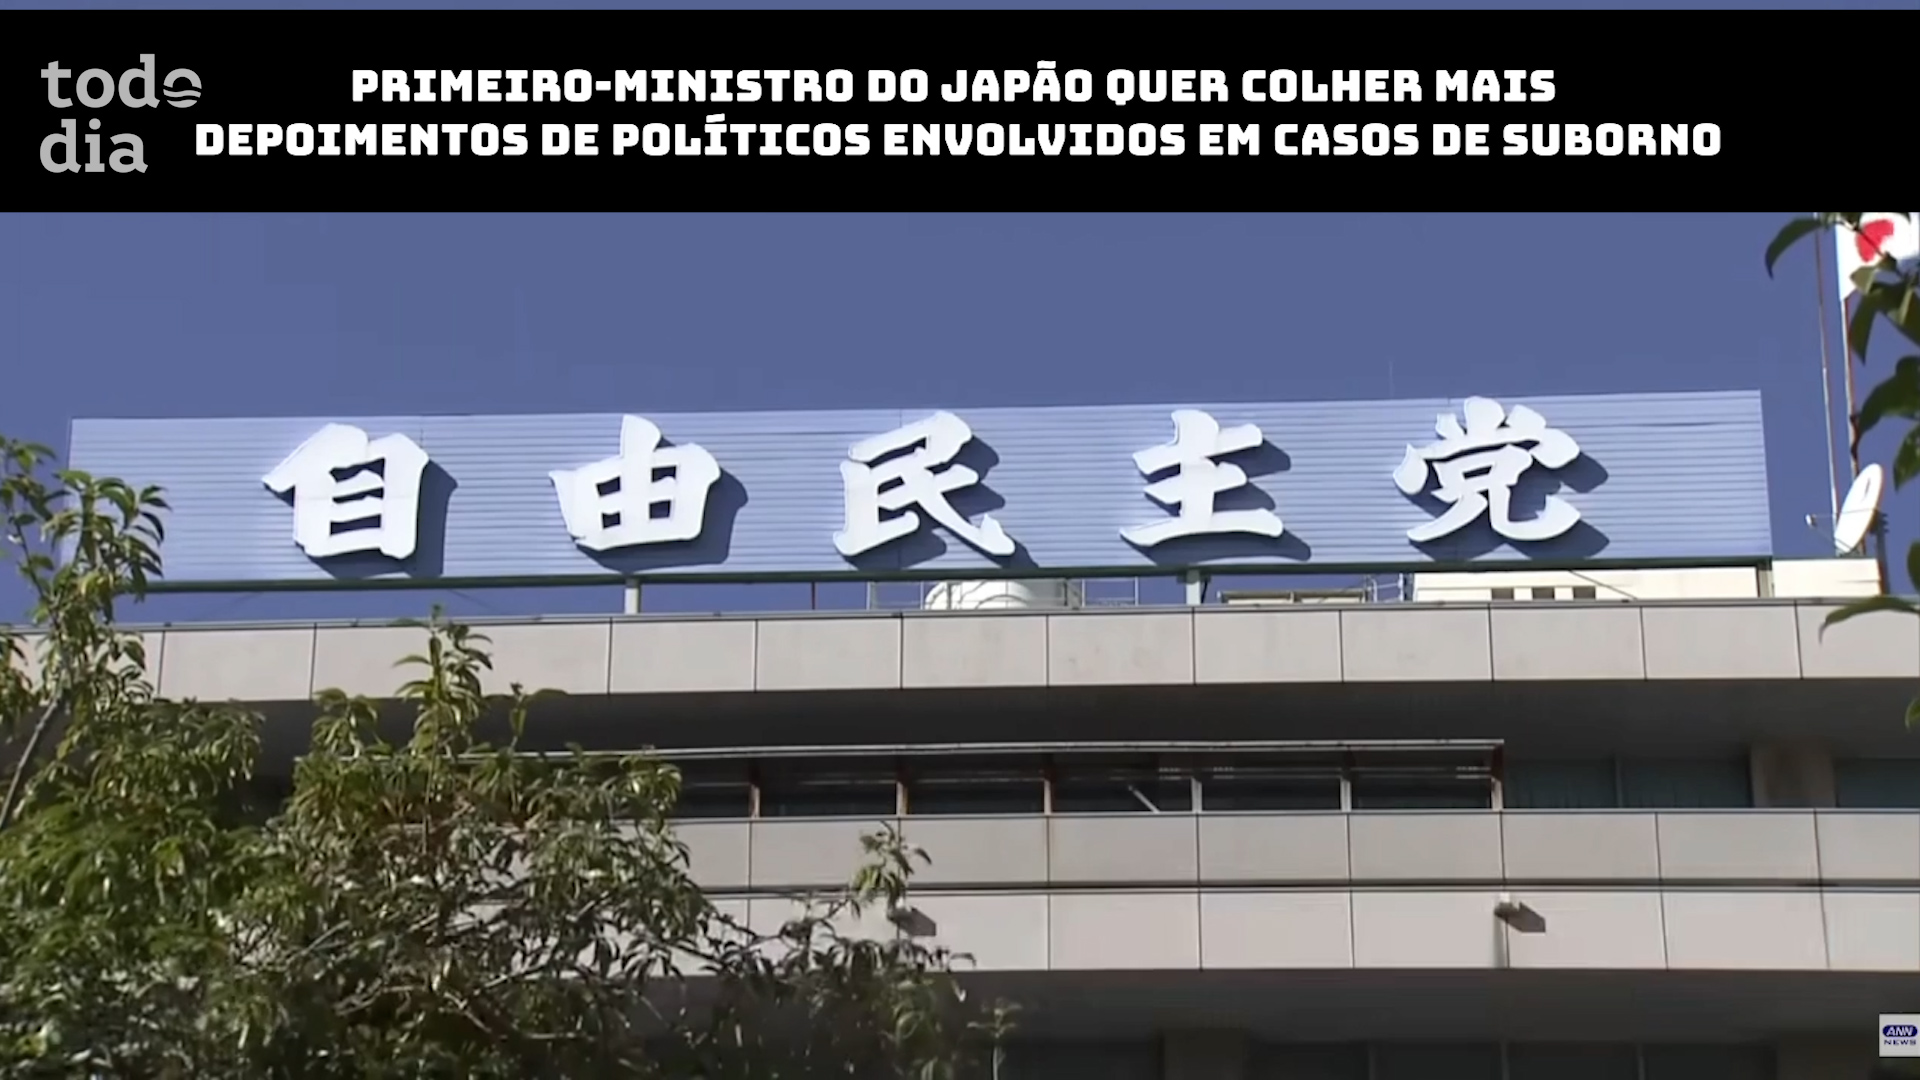 Primeiro-ministro do Japão quer colher mais depoimentos de políticos envolvidos em casos de suborno